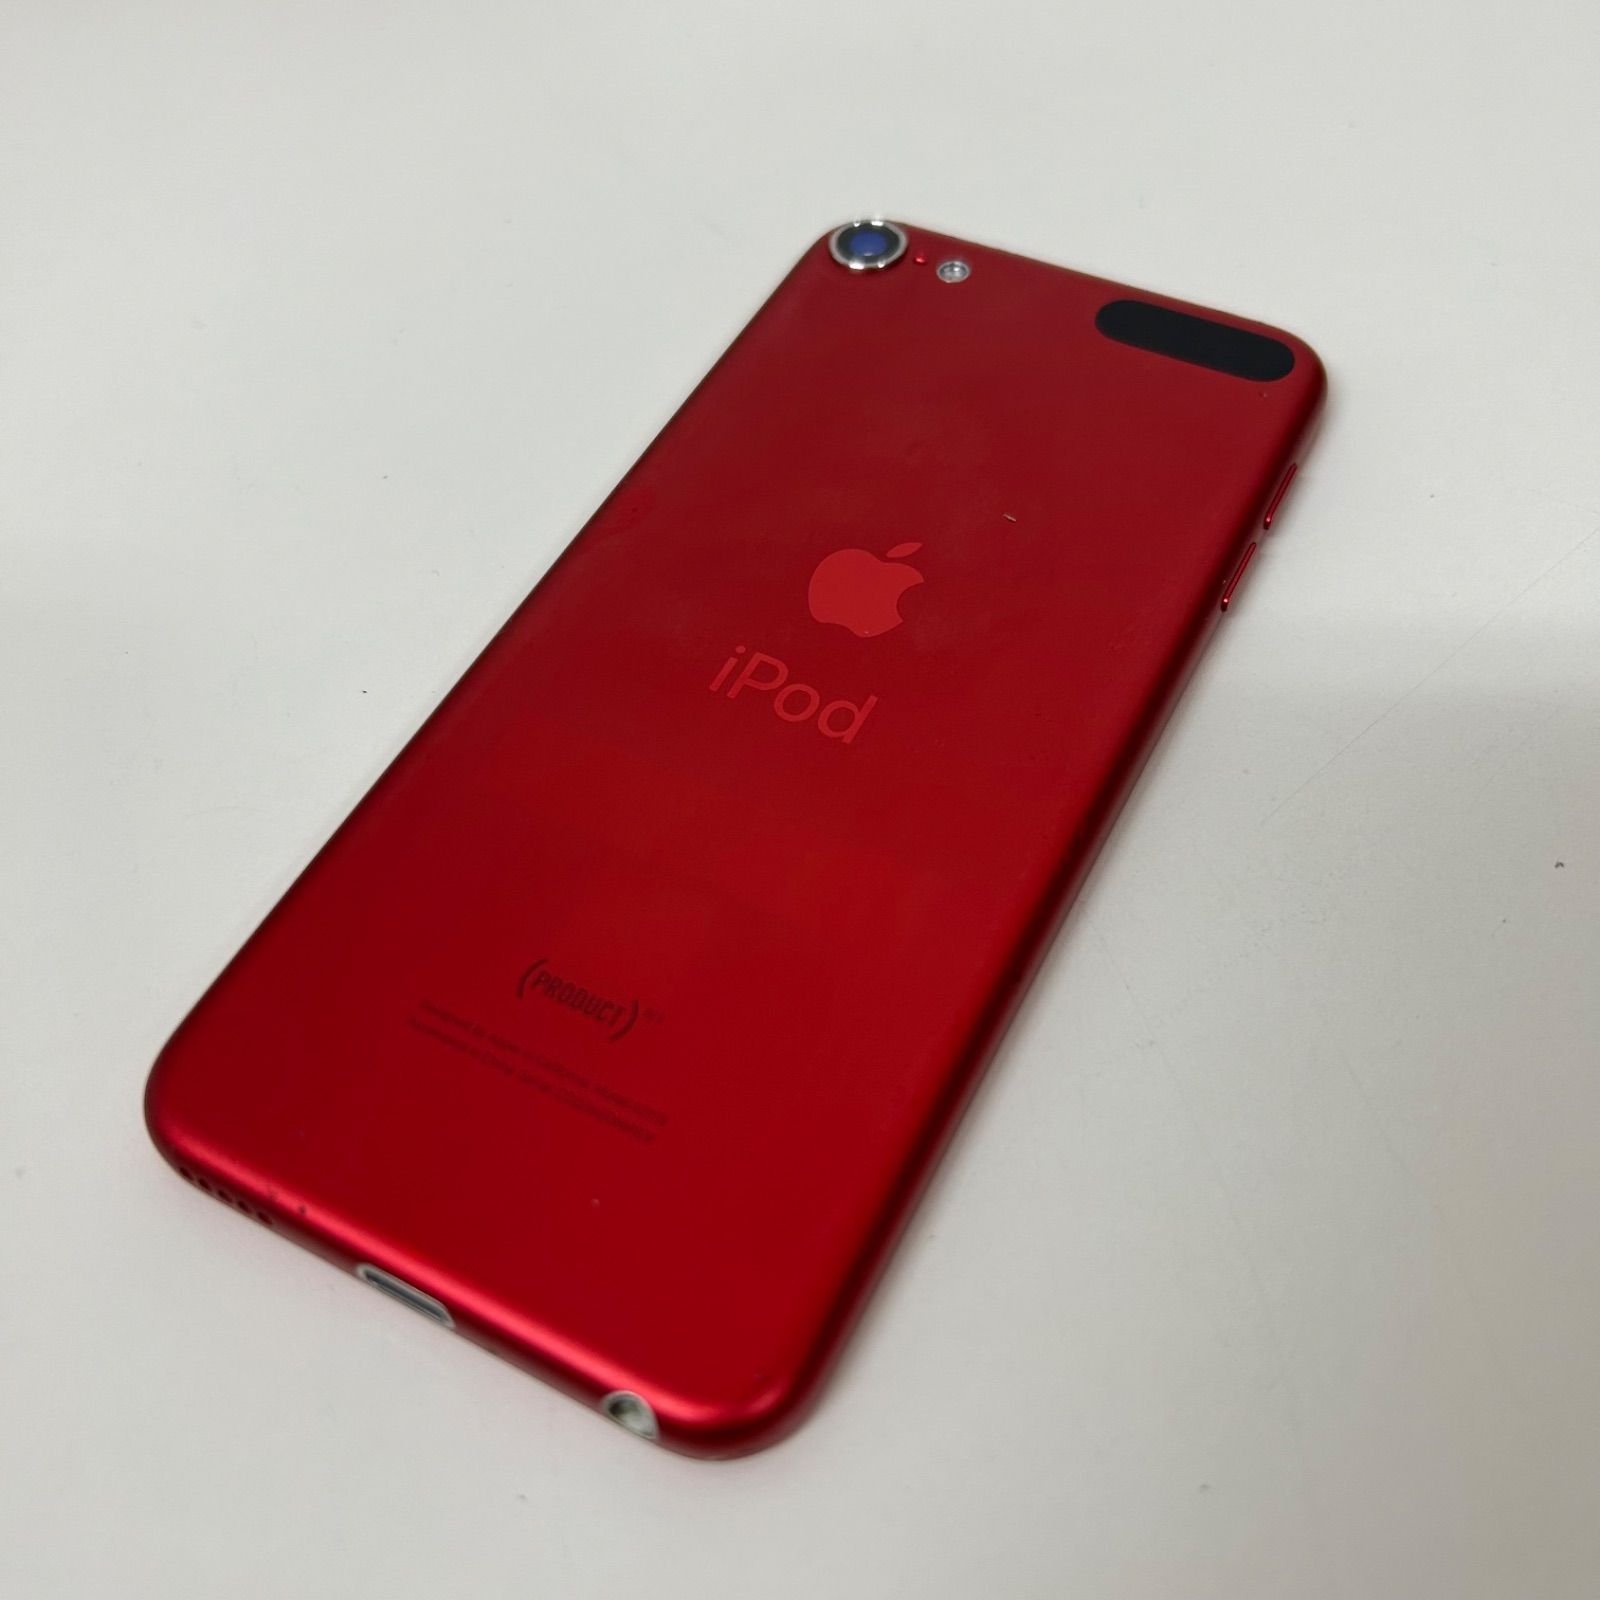 Apple アップル ipod touch 32GB 第7世代 レッド - メルカリ